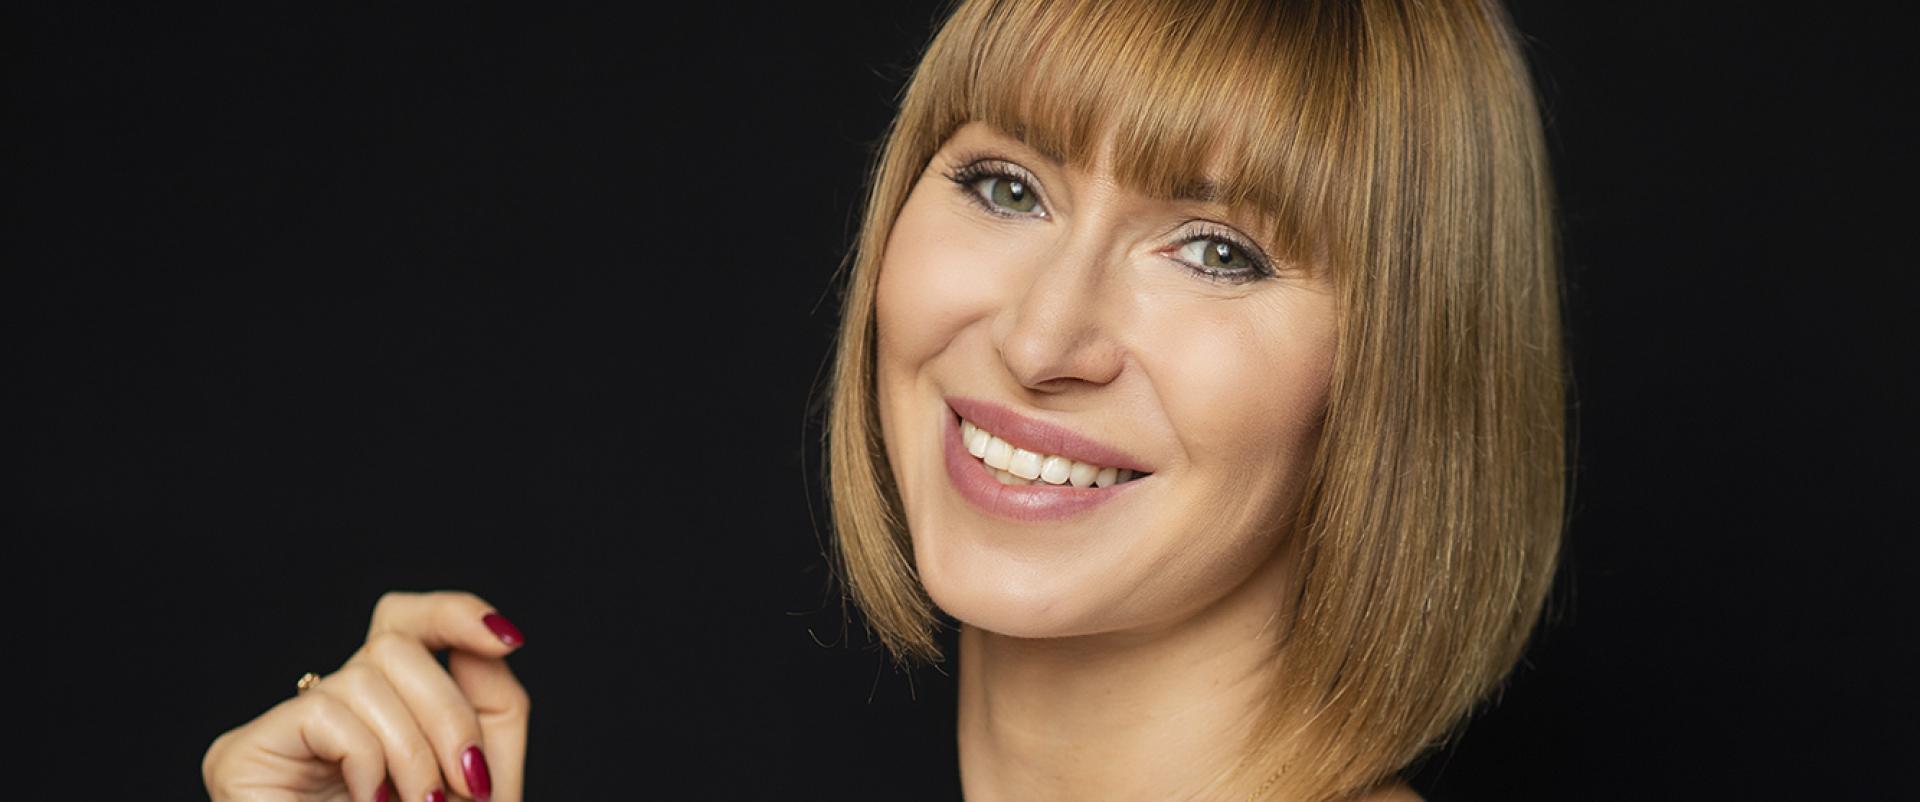 Anna Rutkowska-Didiuk, Mokosh Cosmetics: istotne jest wdrożenie odpowiednich zasad bezpieczeństwa w każdym obszarze biznesu